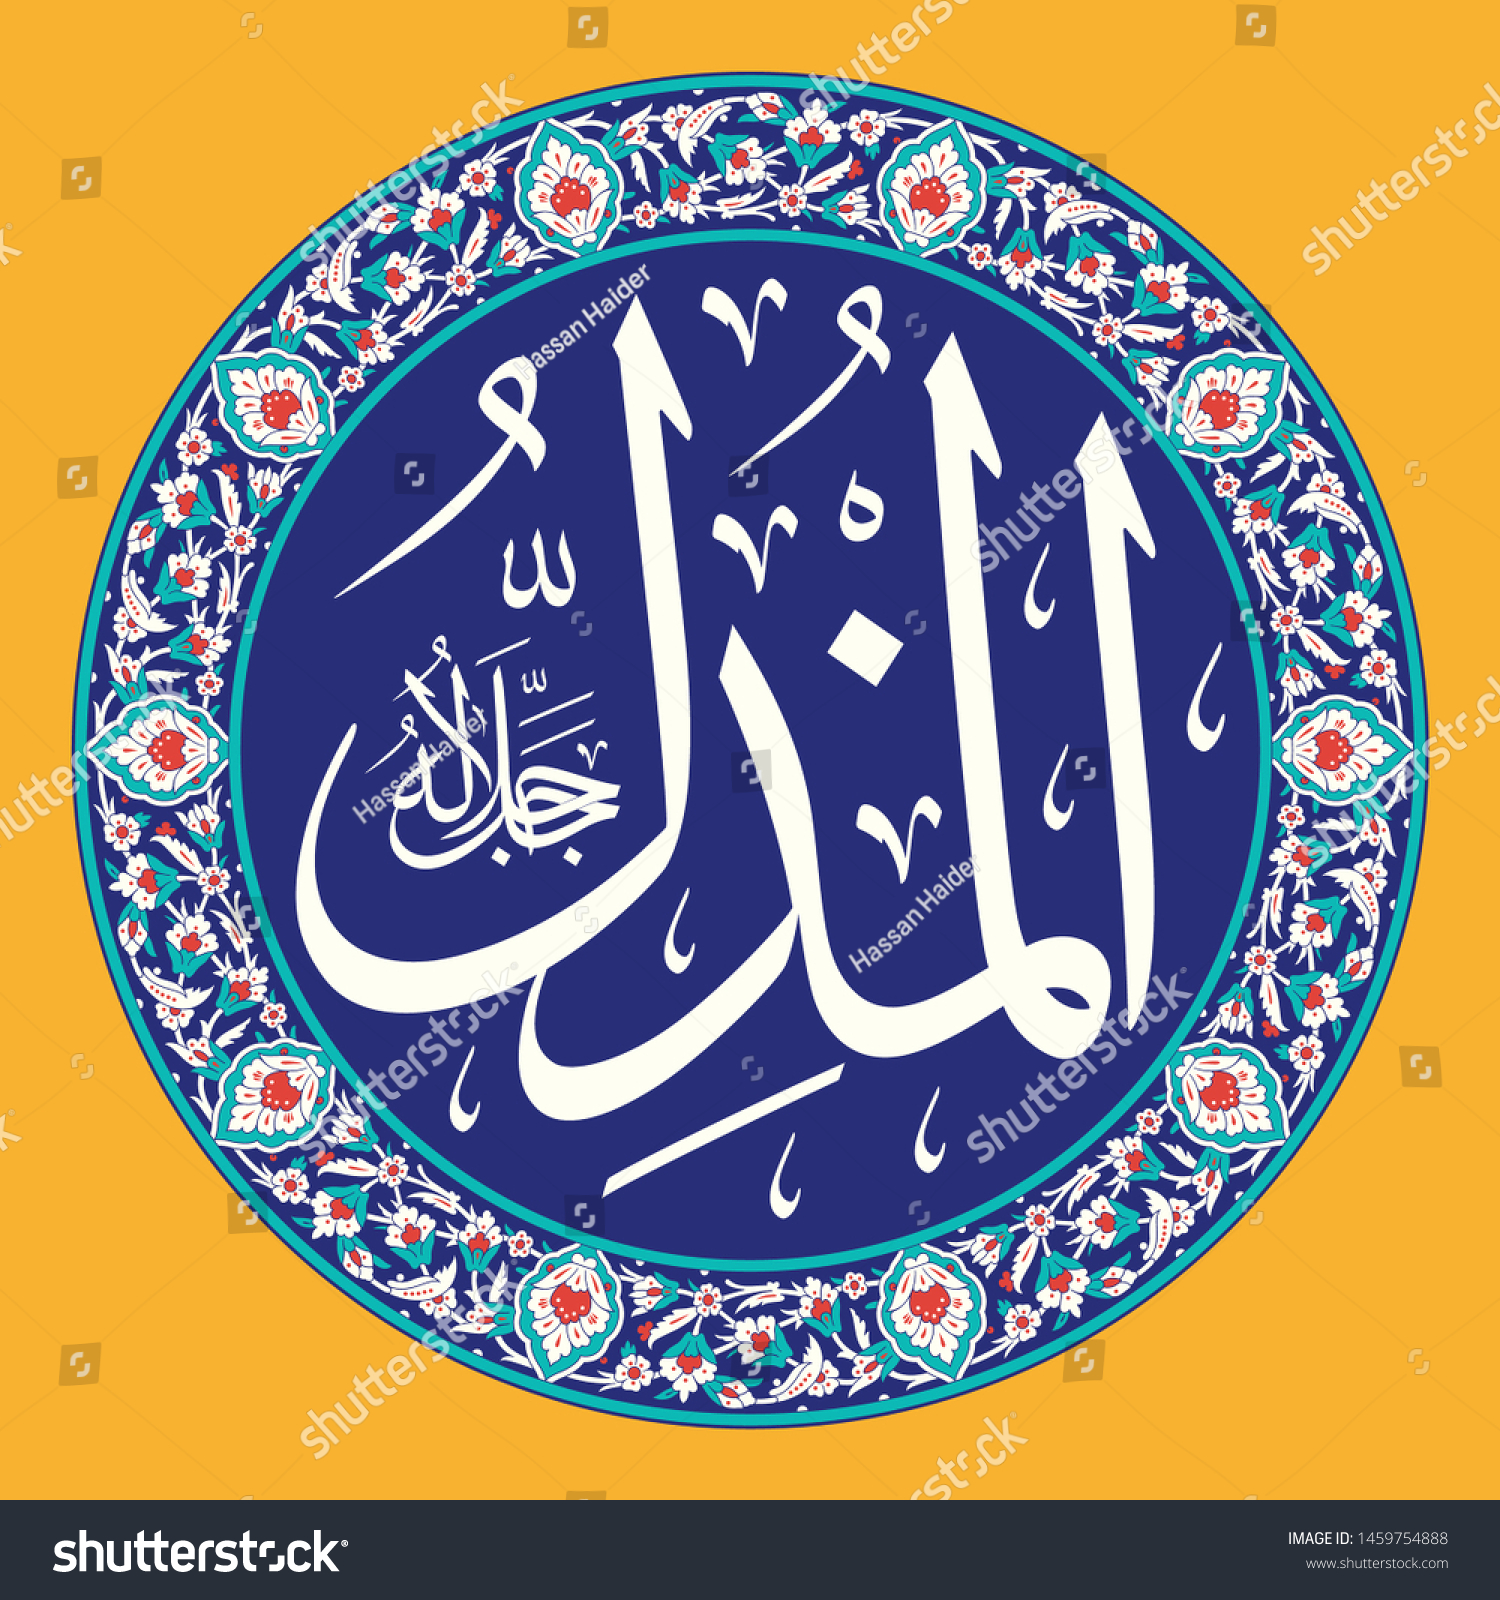 Allah swt in arabic